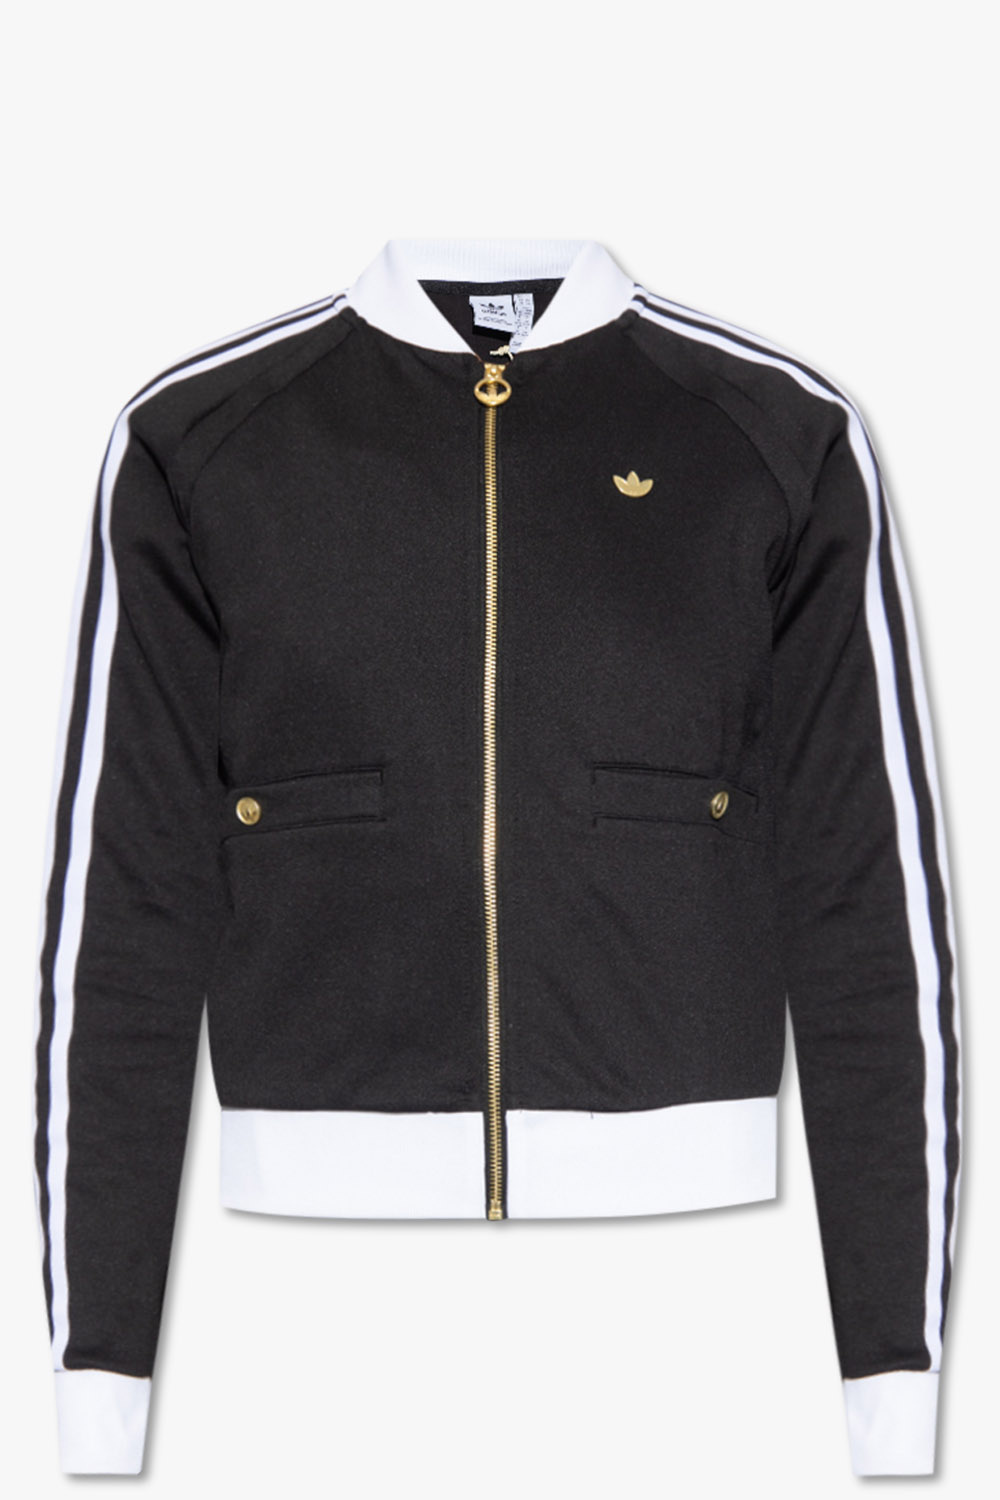 Adidas Originals x Nigo Bear track jacket black Grey white bomber L 2015